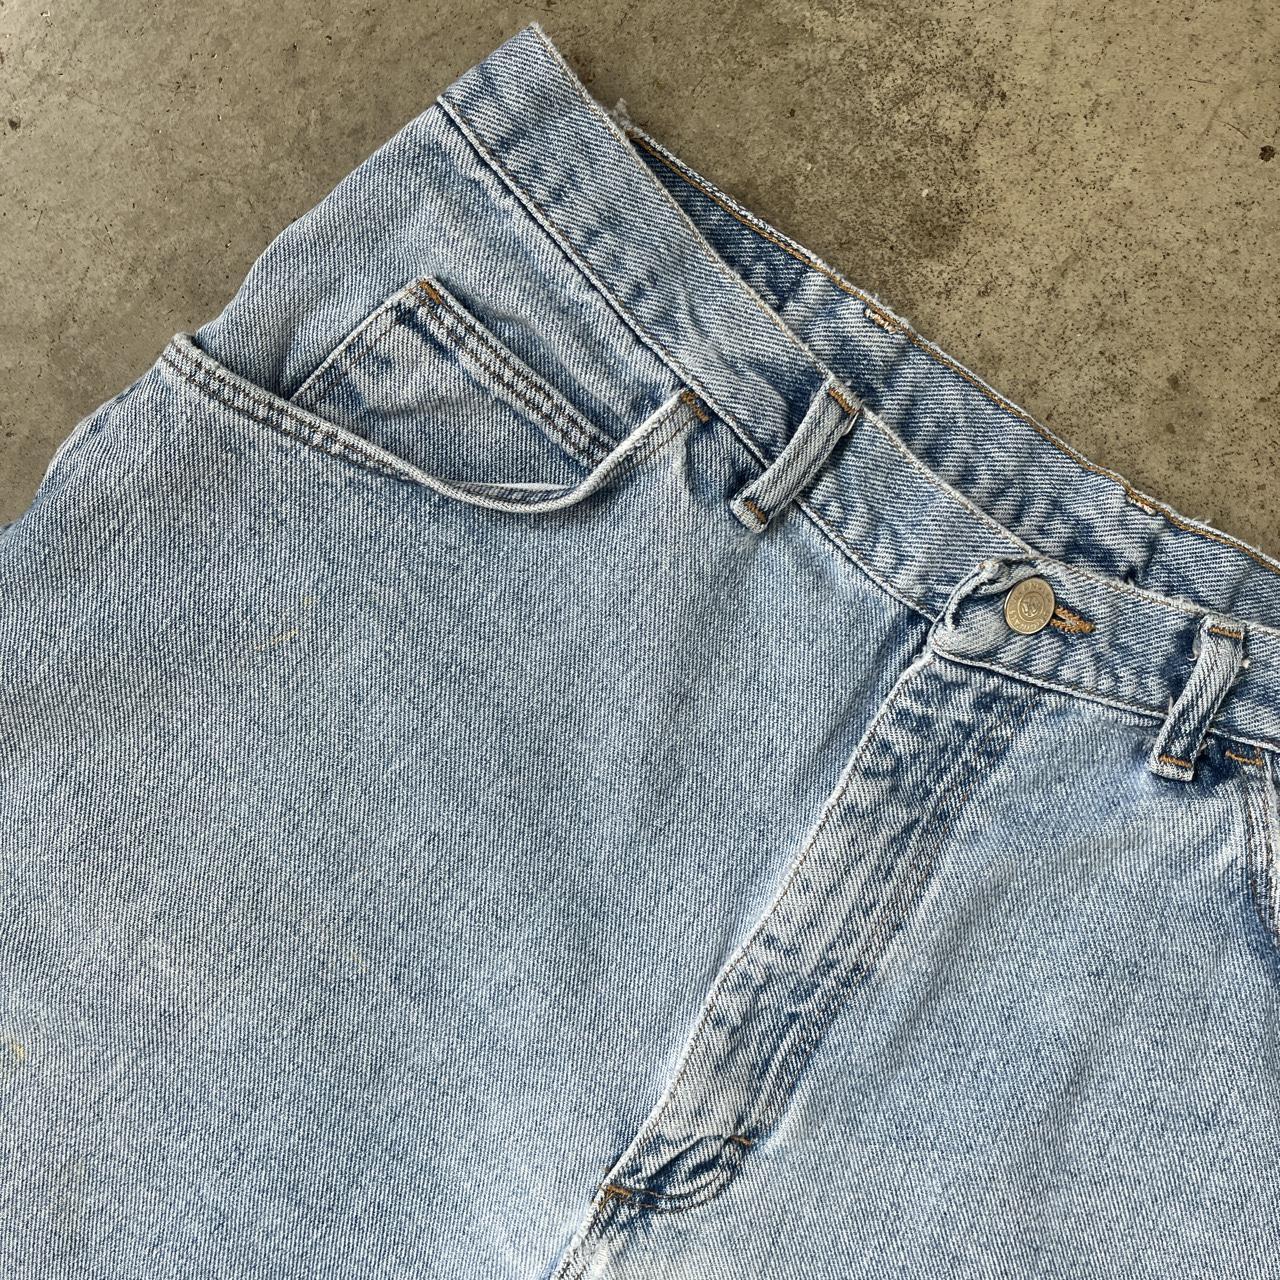 Vintage Wrangler light wash denim jeans shorts Few... - Depop